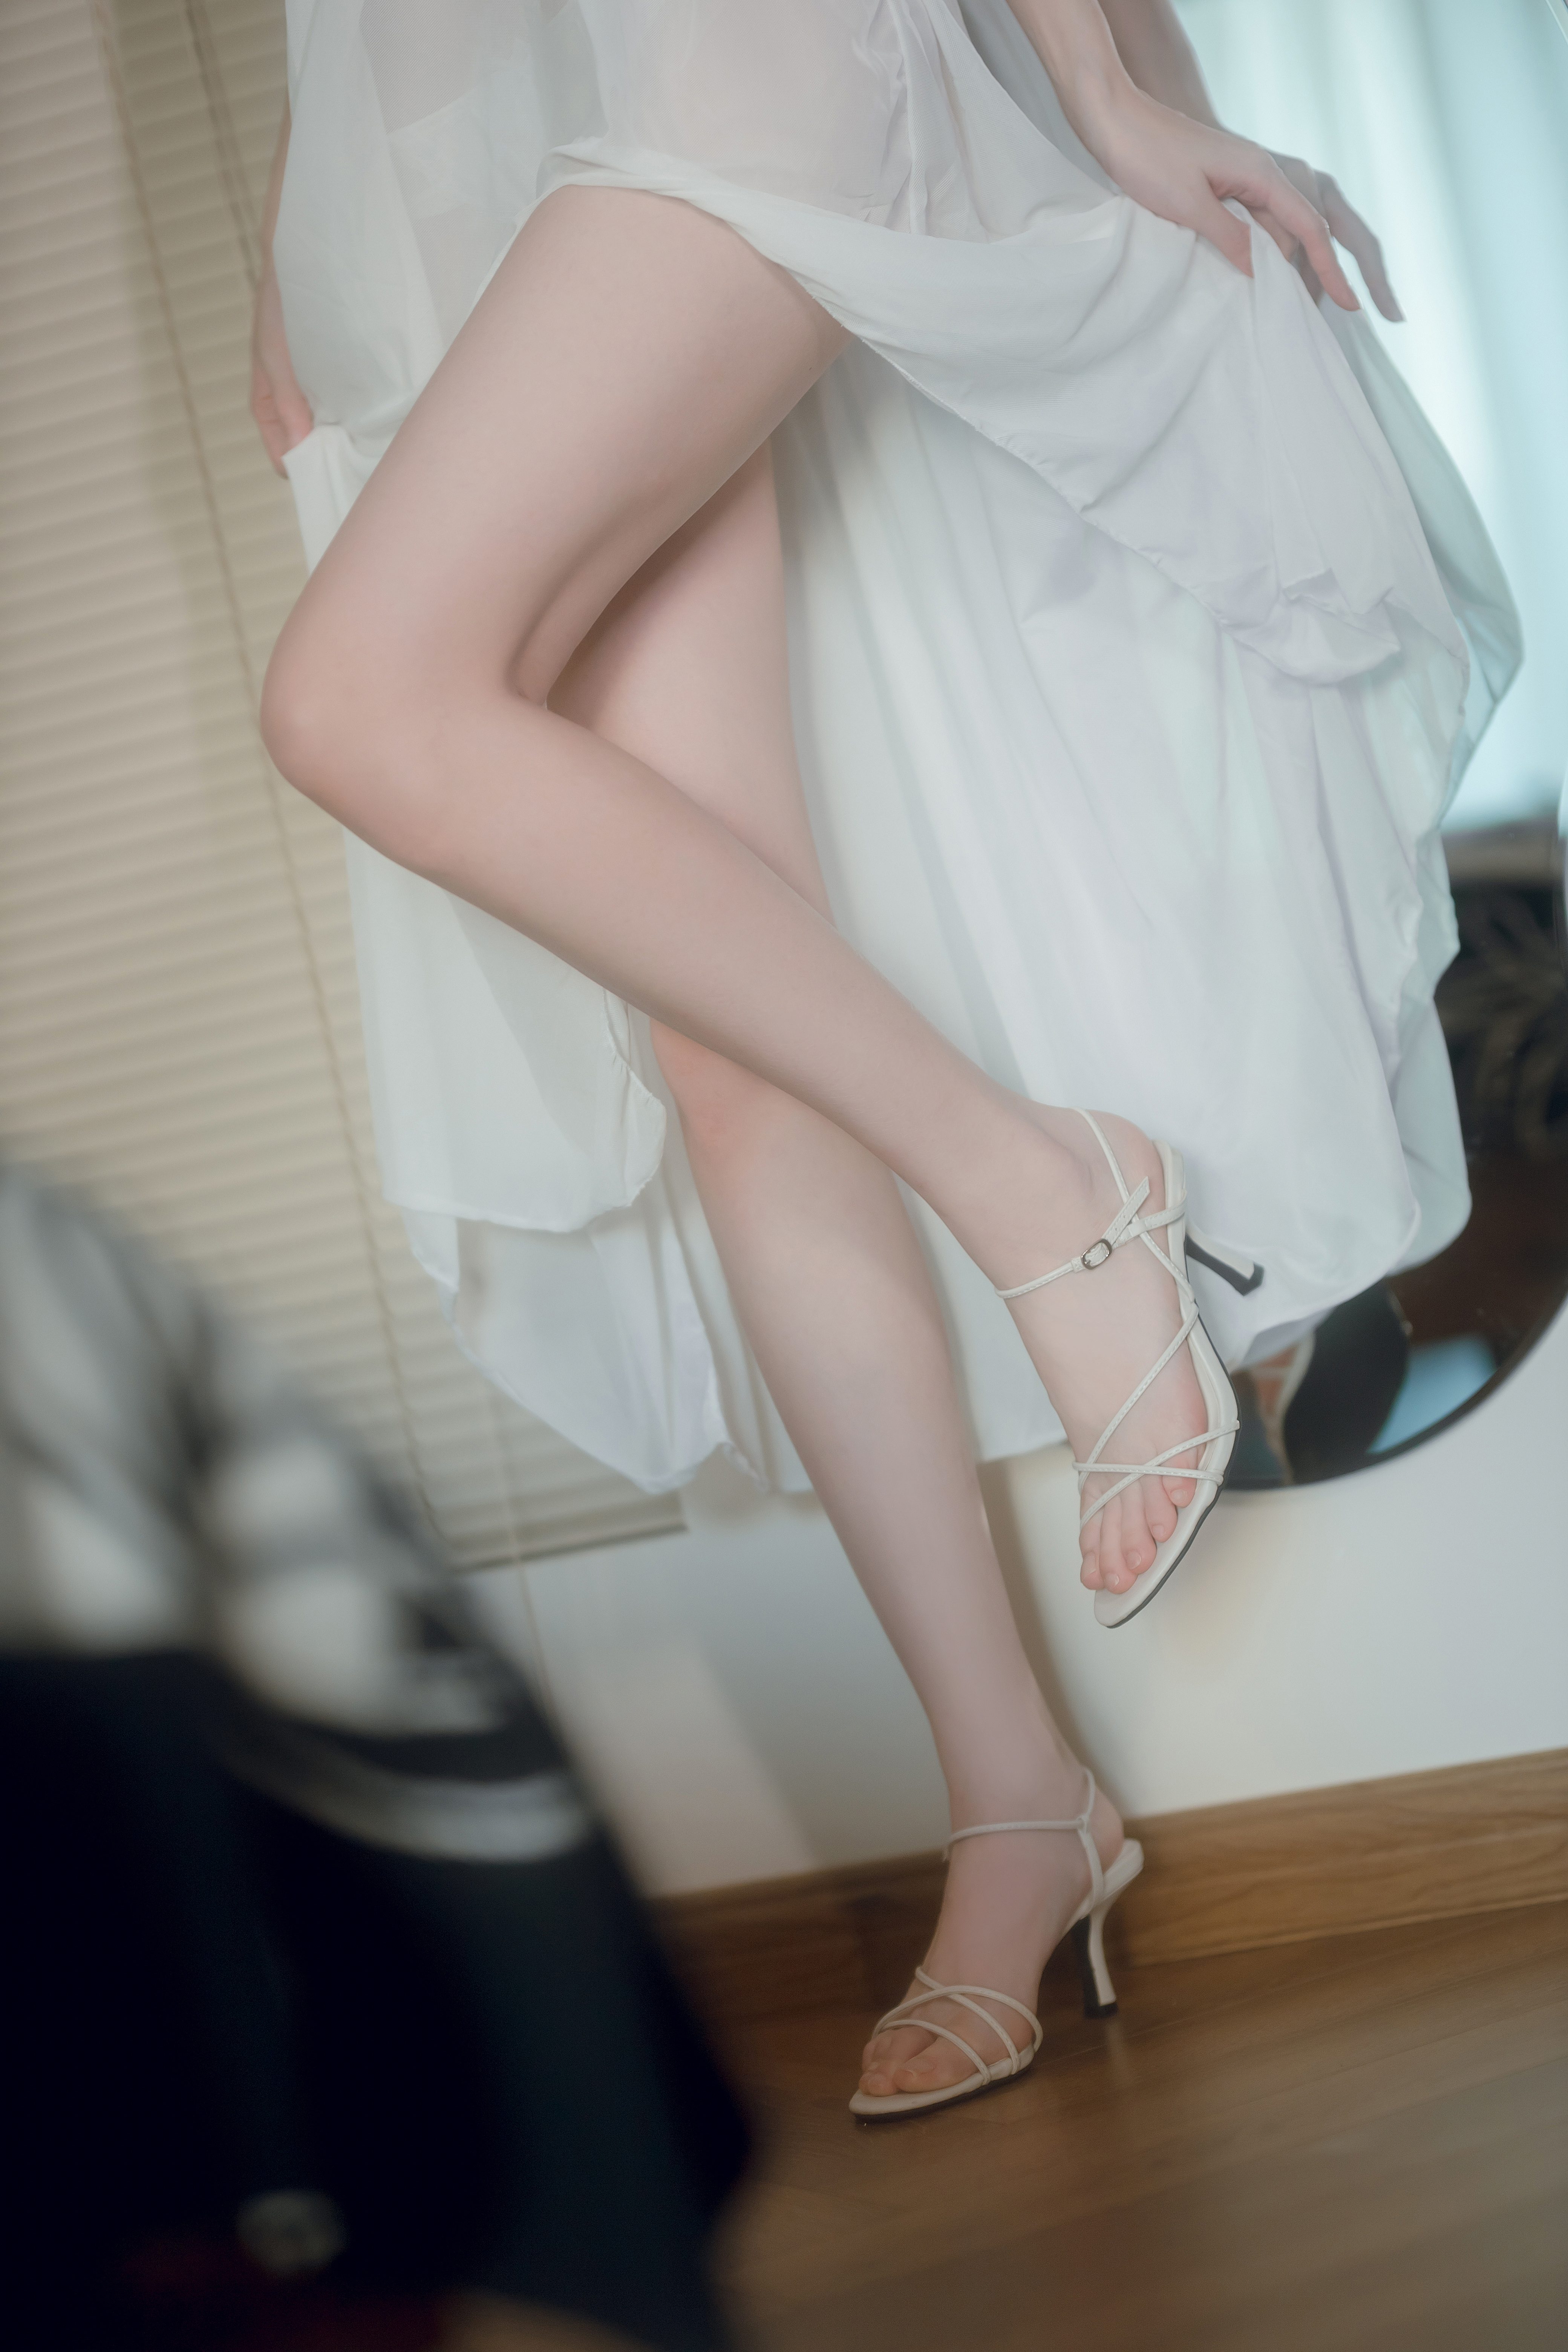 High Heels White Dress Dress Barefoot Asian 4160x6240